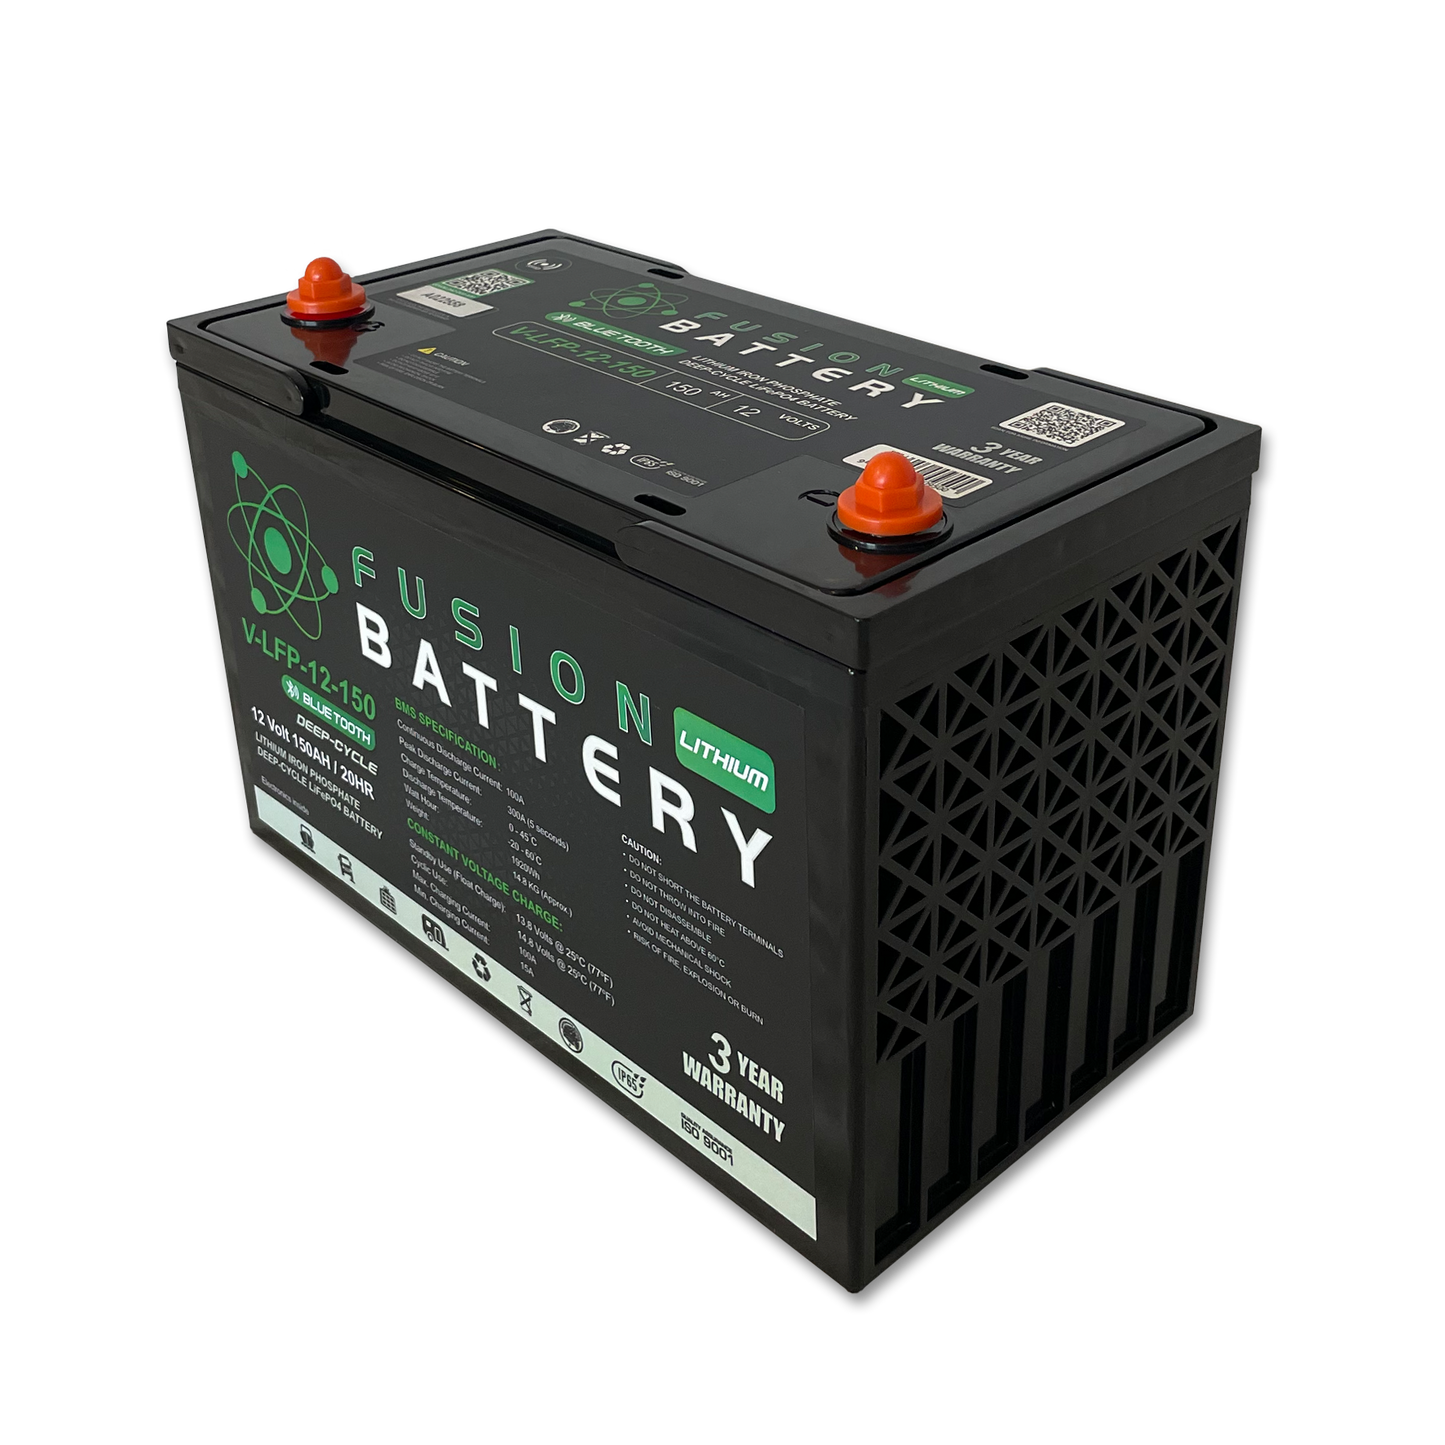 Fusion V-LFP-12-150 Deep-Cycle 12V 150Ah Lithium Battery